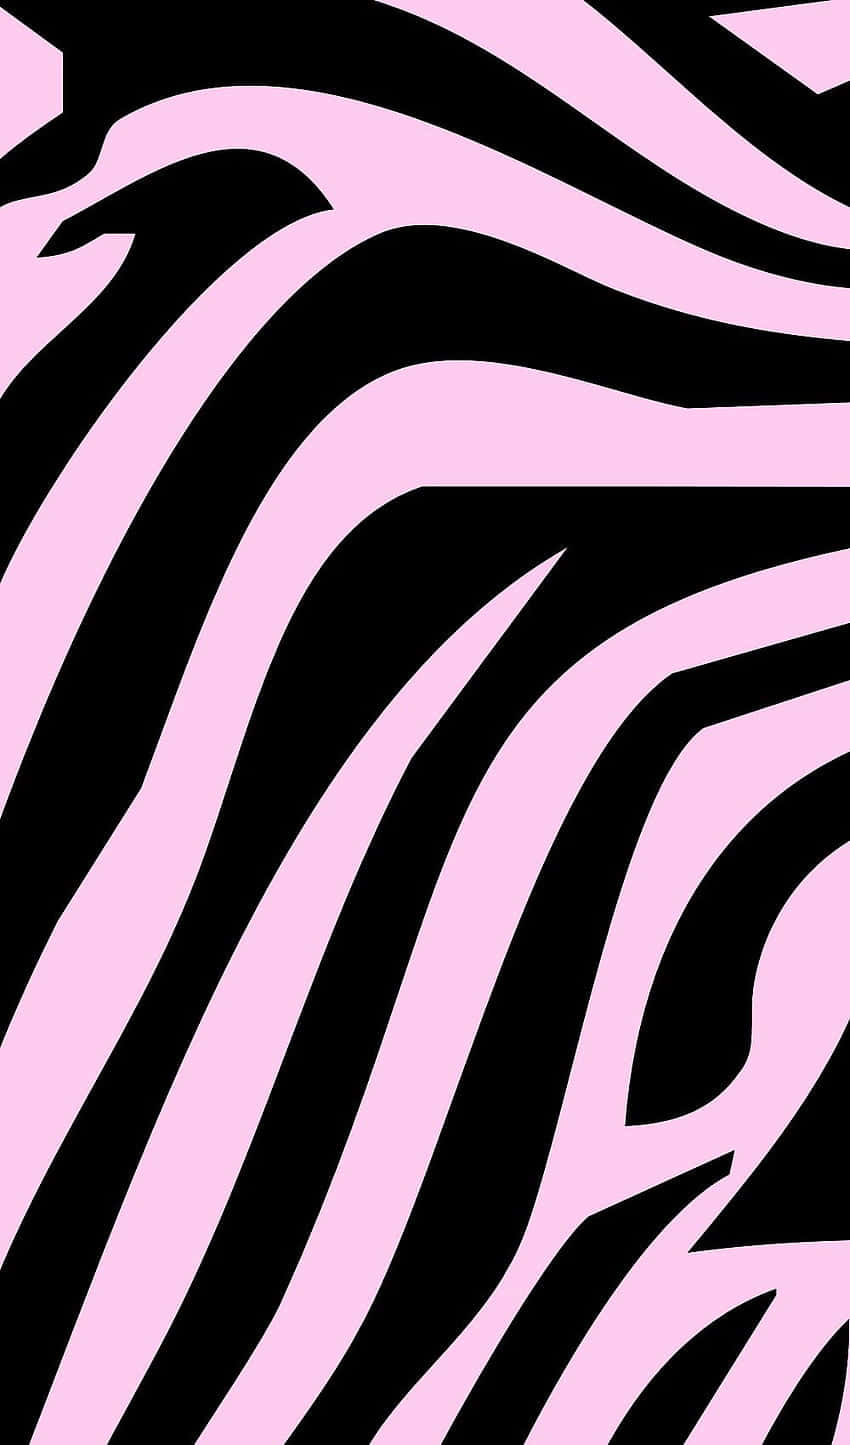 Umfundo De Tela Com Estampa De Zebra Rosa E Preta. Papel de Parede